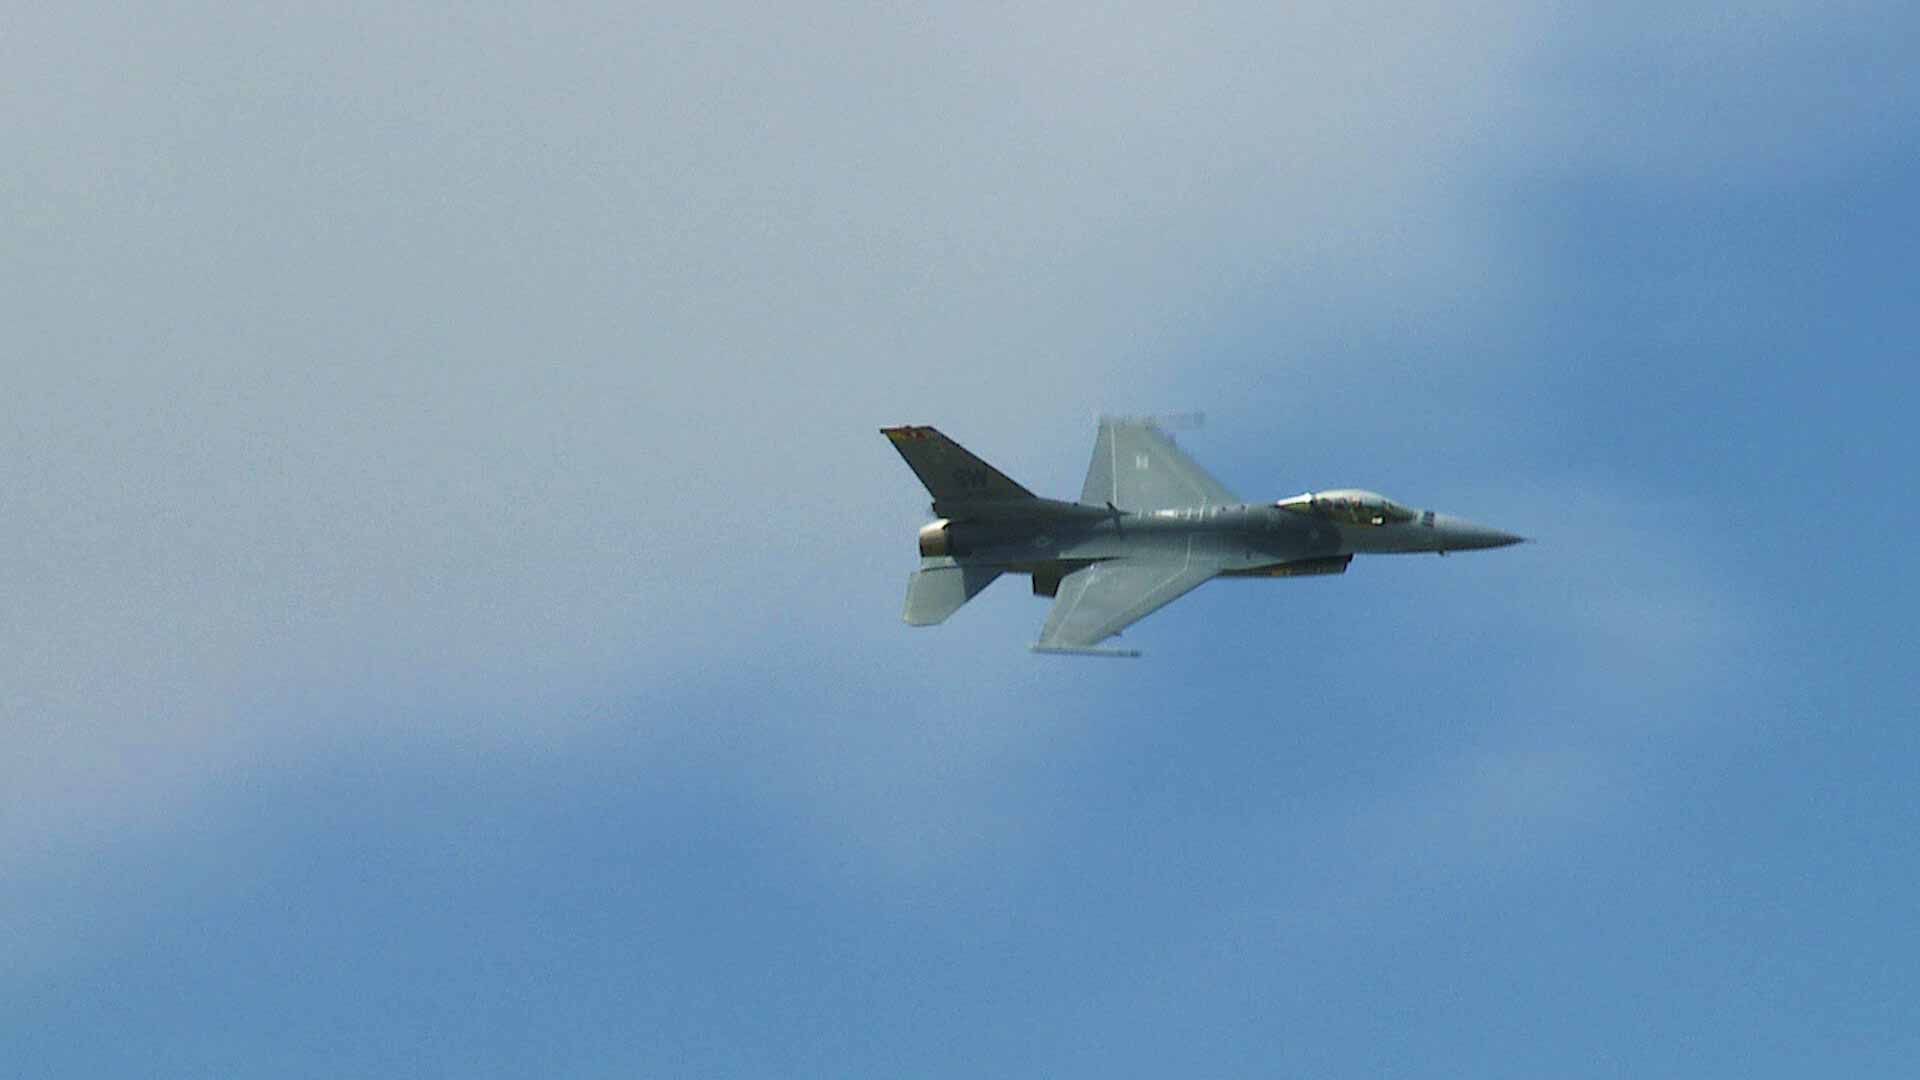 F16 jet in the sky